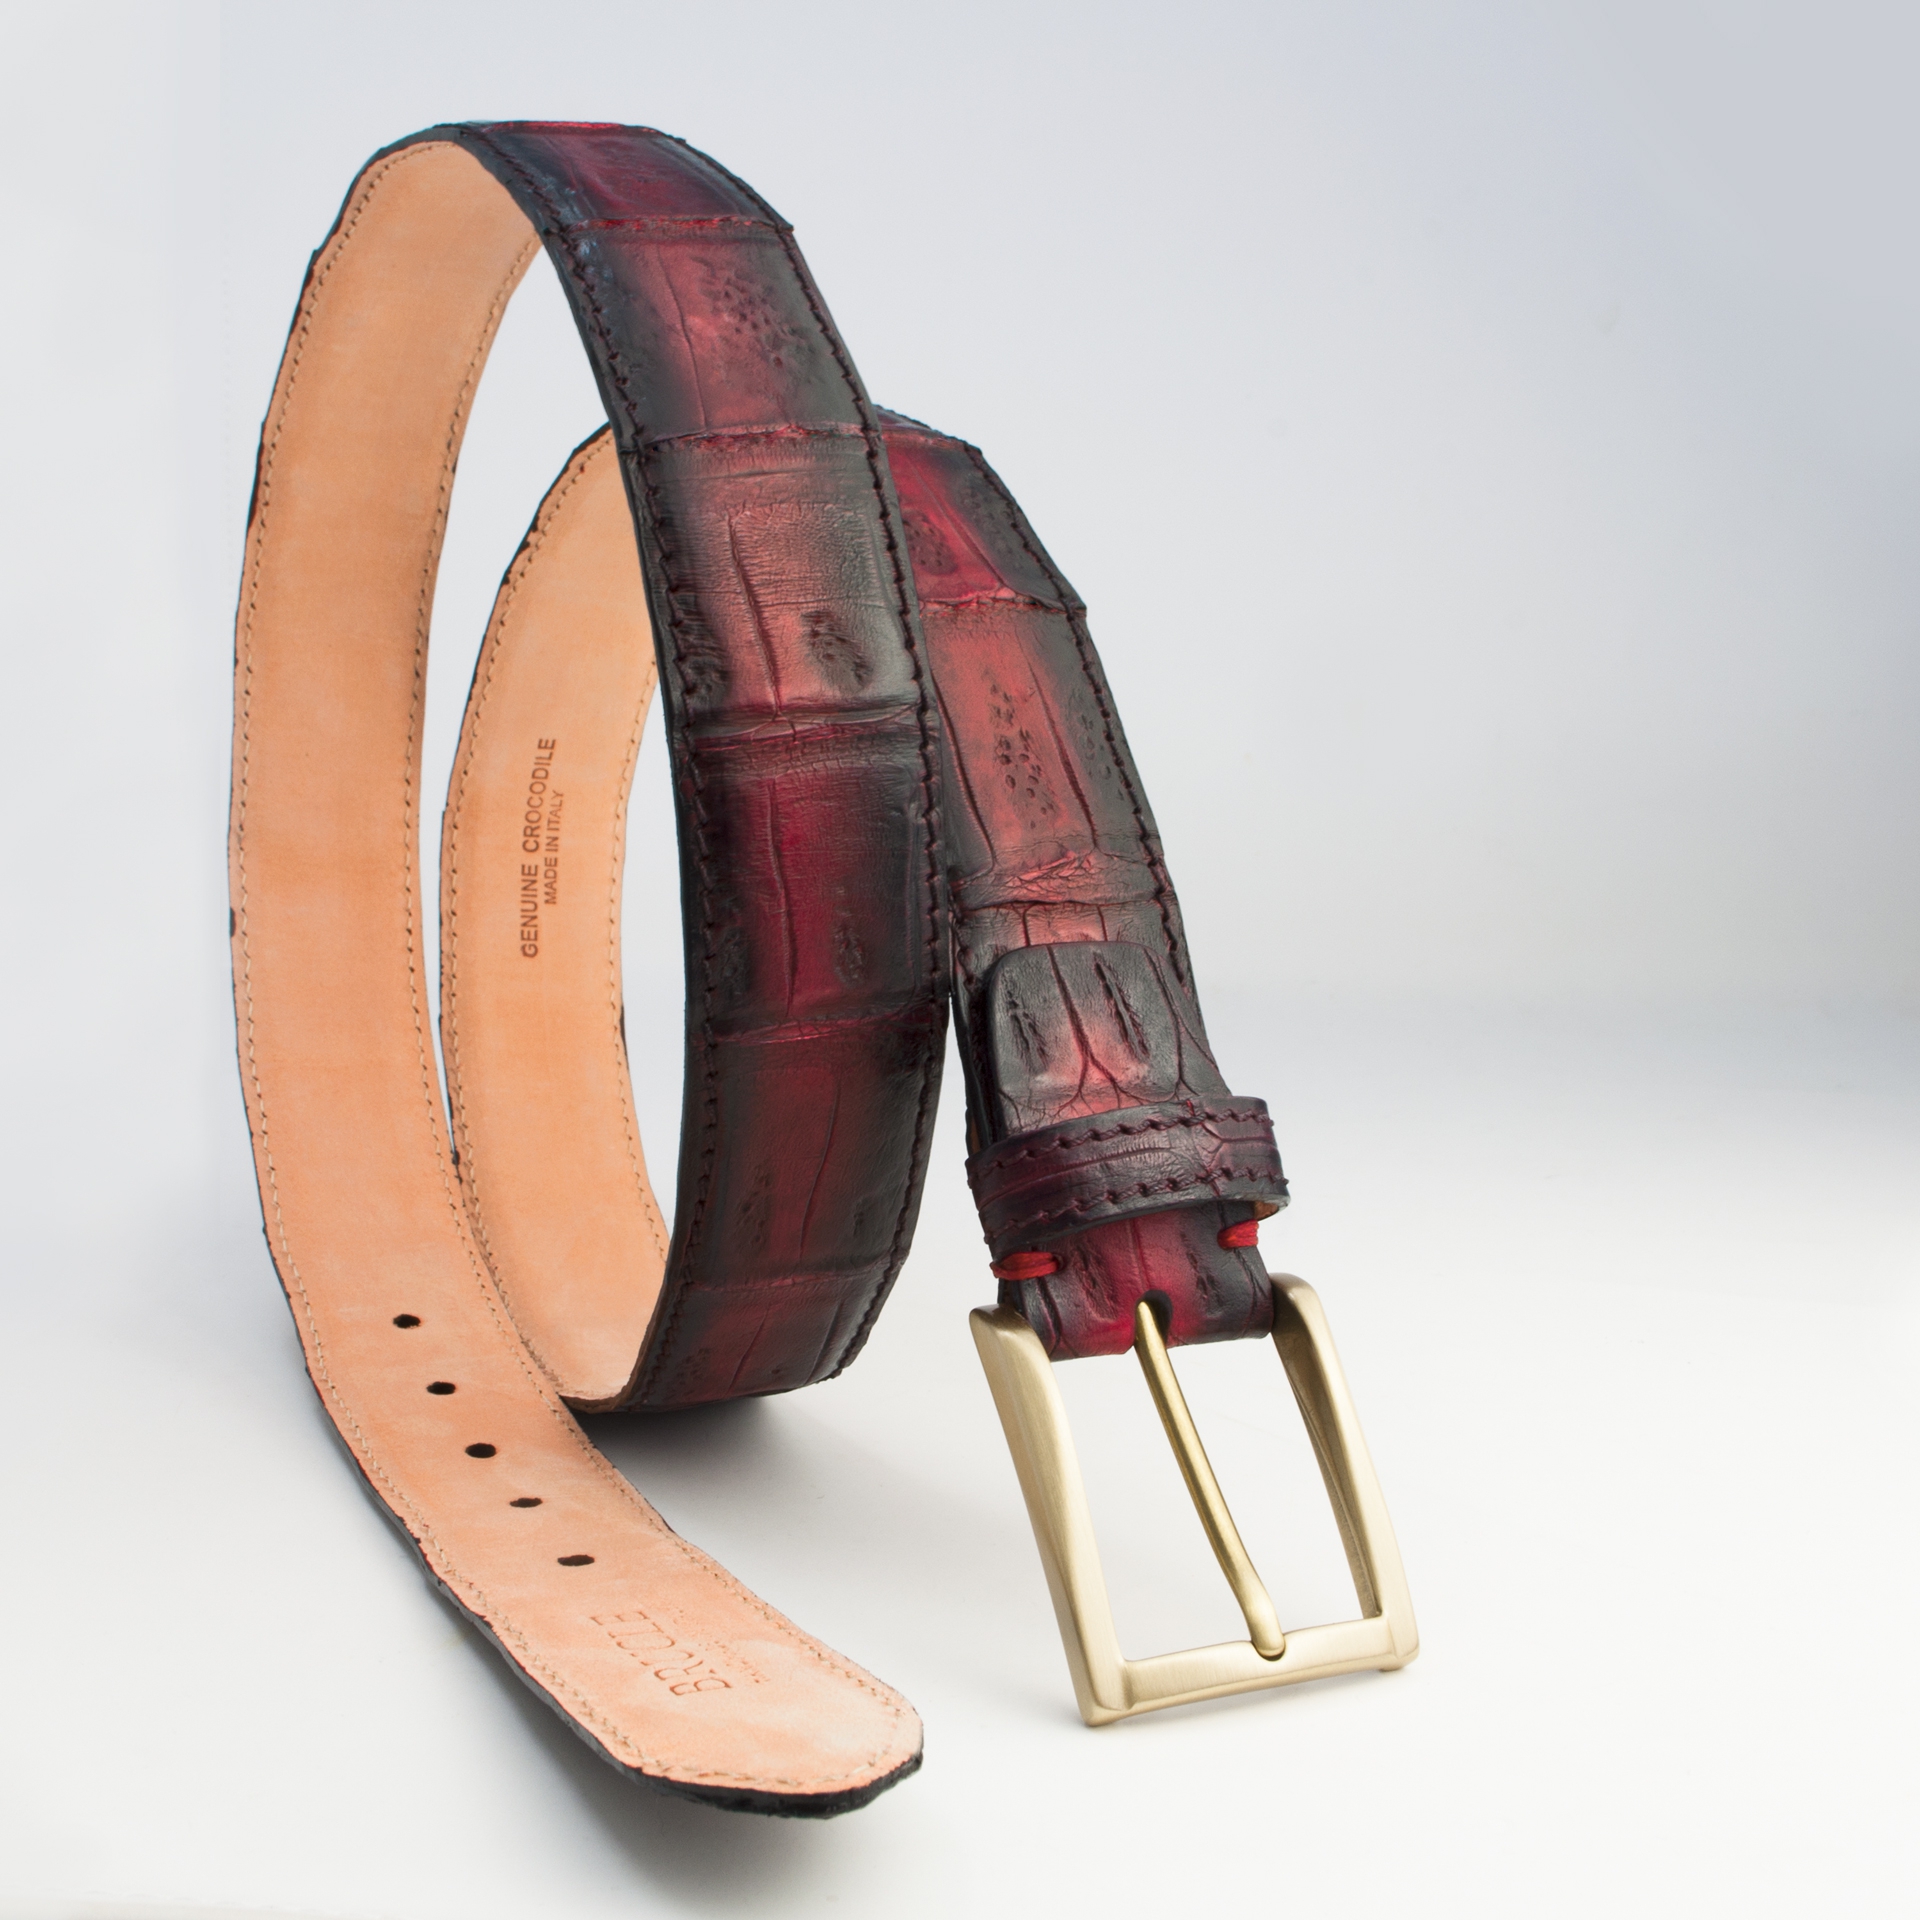 Cintura artigianale in vera coda di coccodrillo colorata e sfumata a mano con la tecnica della patina,bordeaux sfumato nero.